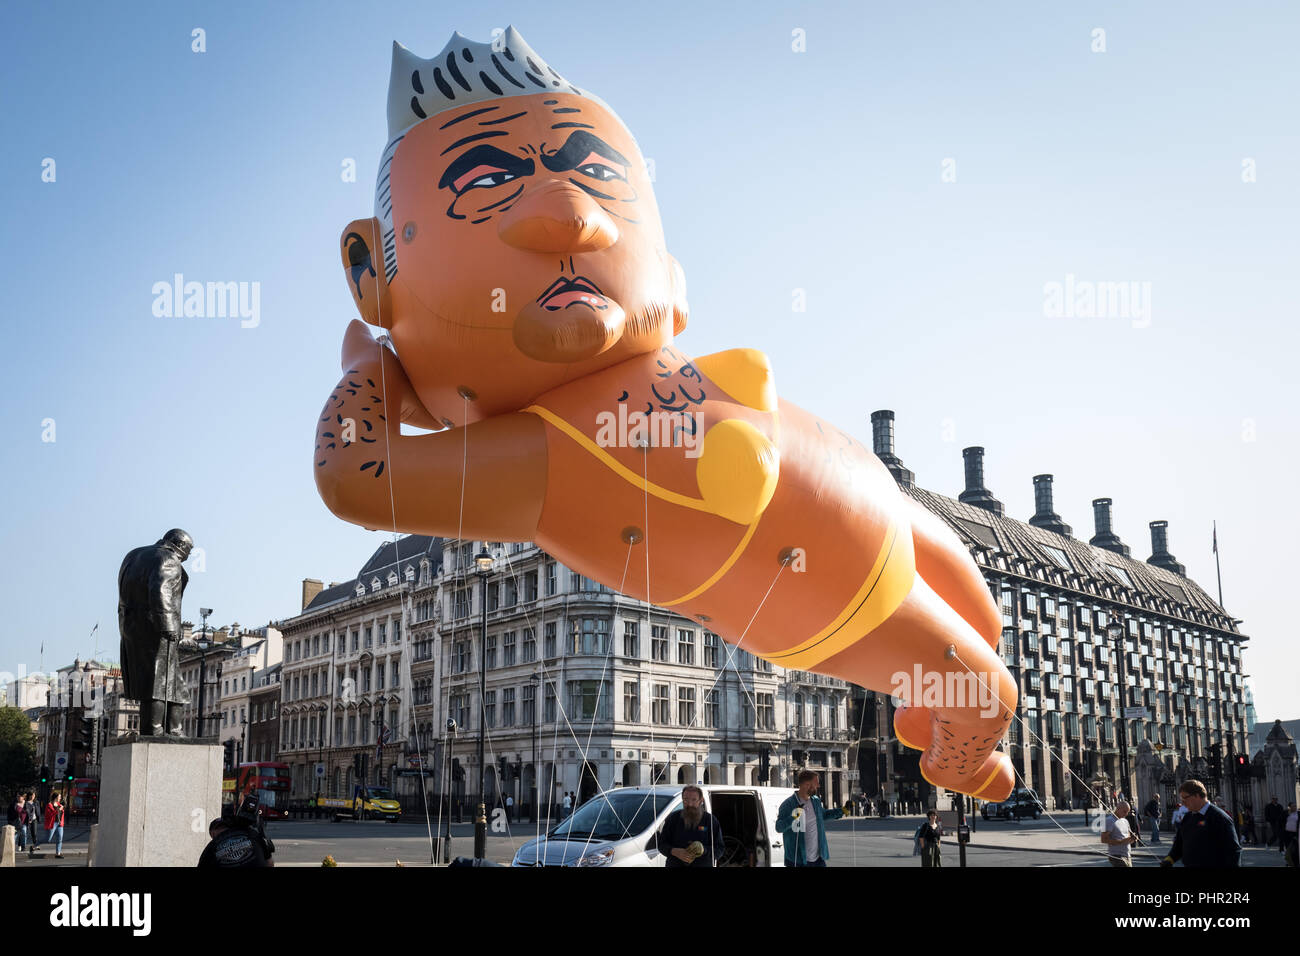 Riesige Luftschiff der Londoner Bürgermeister Sadiq Khan trägt einen gelben Bikini wird aufgeblasen, bereit, über Parliament Square in London zu fliegen. Stockfoto